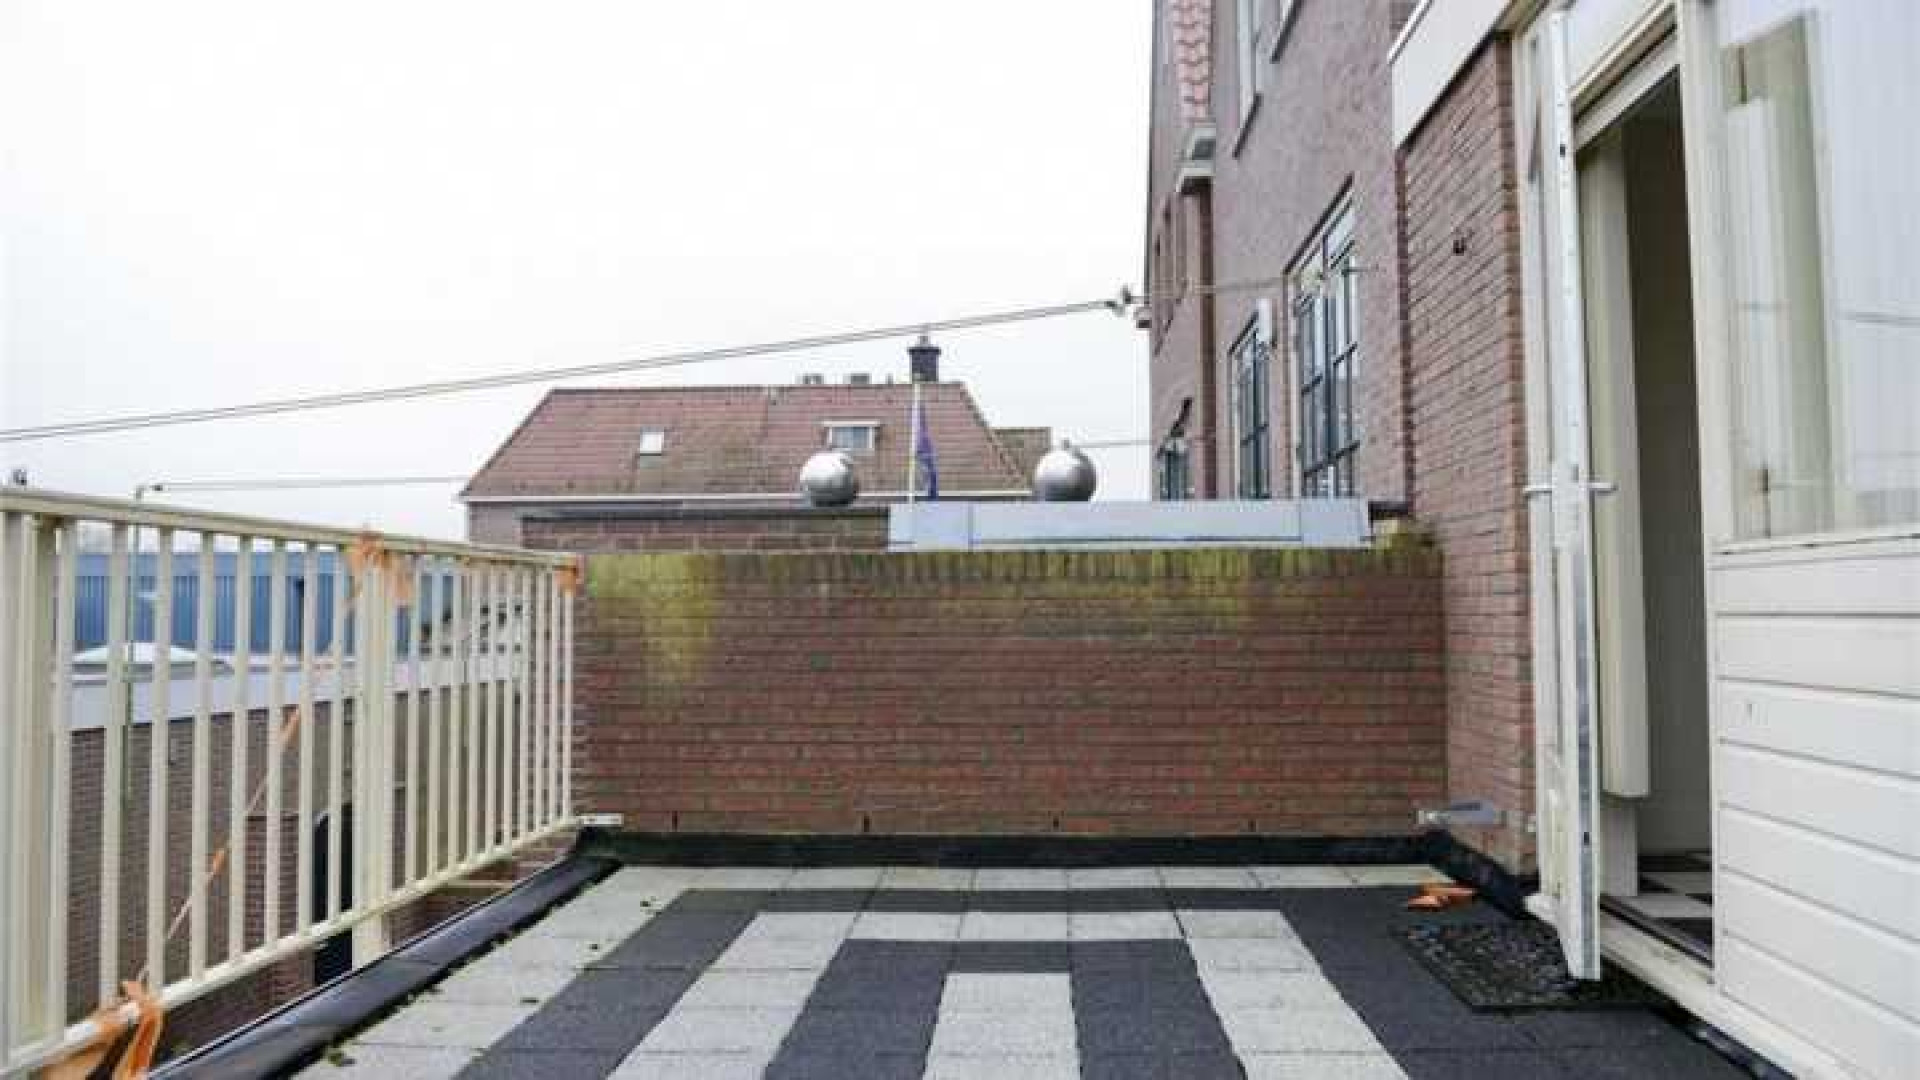 Funderingsprobleem nekt verkoop Volendamse huis van Yolanthe. Zie foto's 21